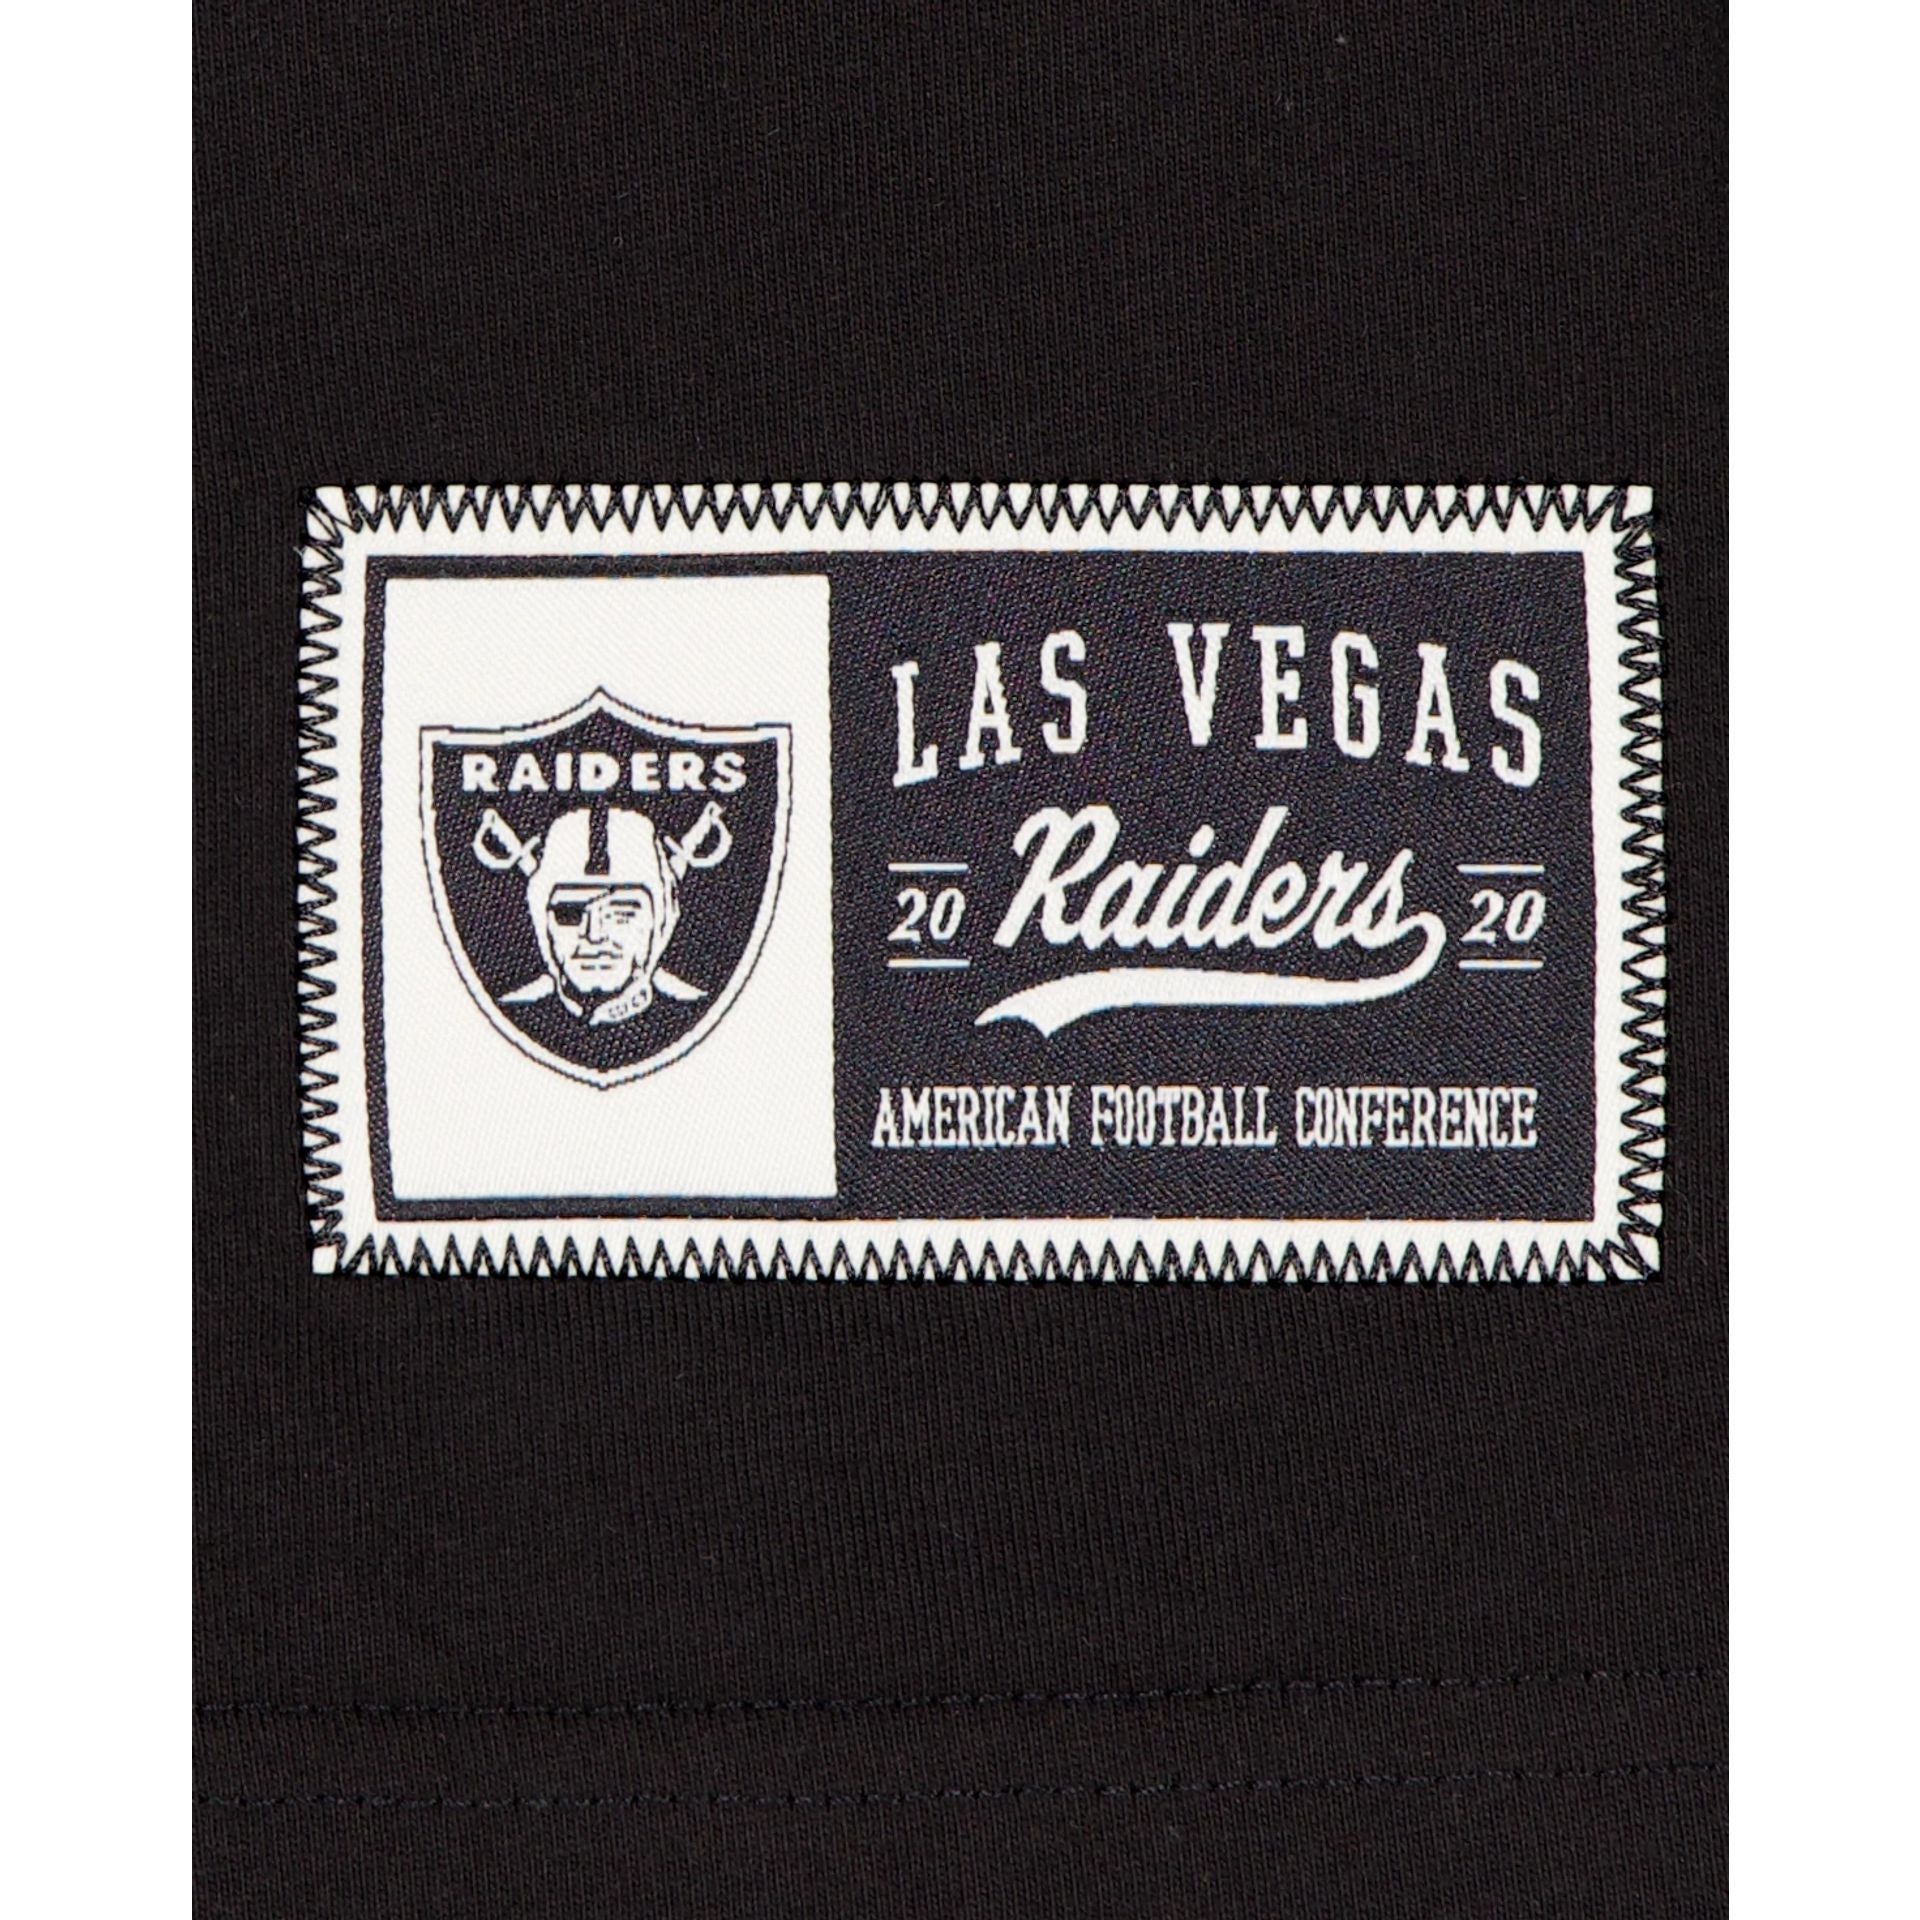 Las Vegas Raiders Patch 